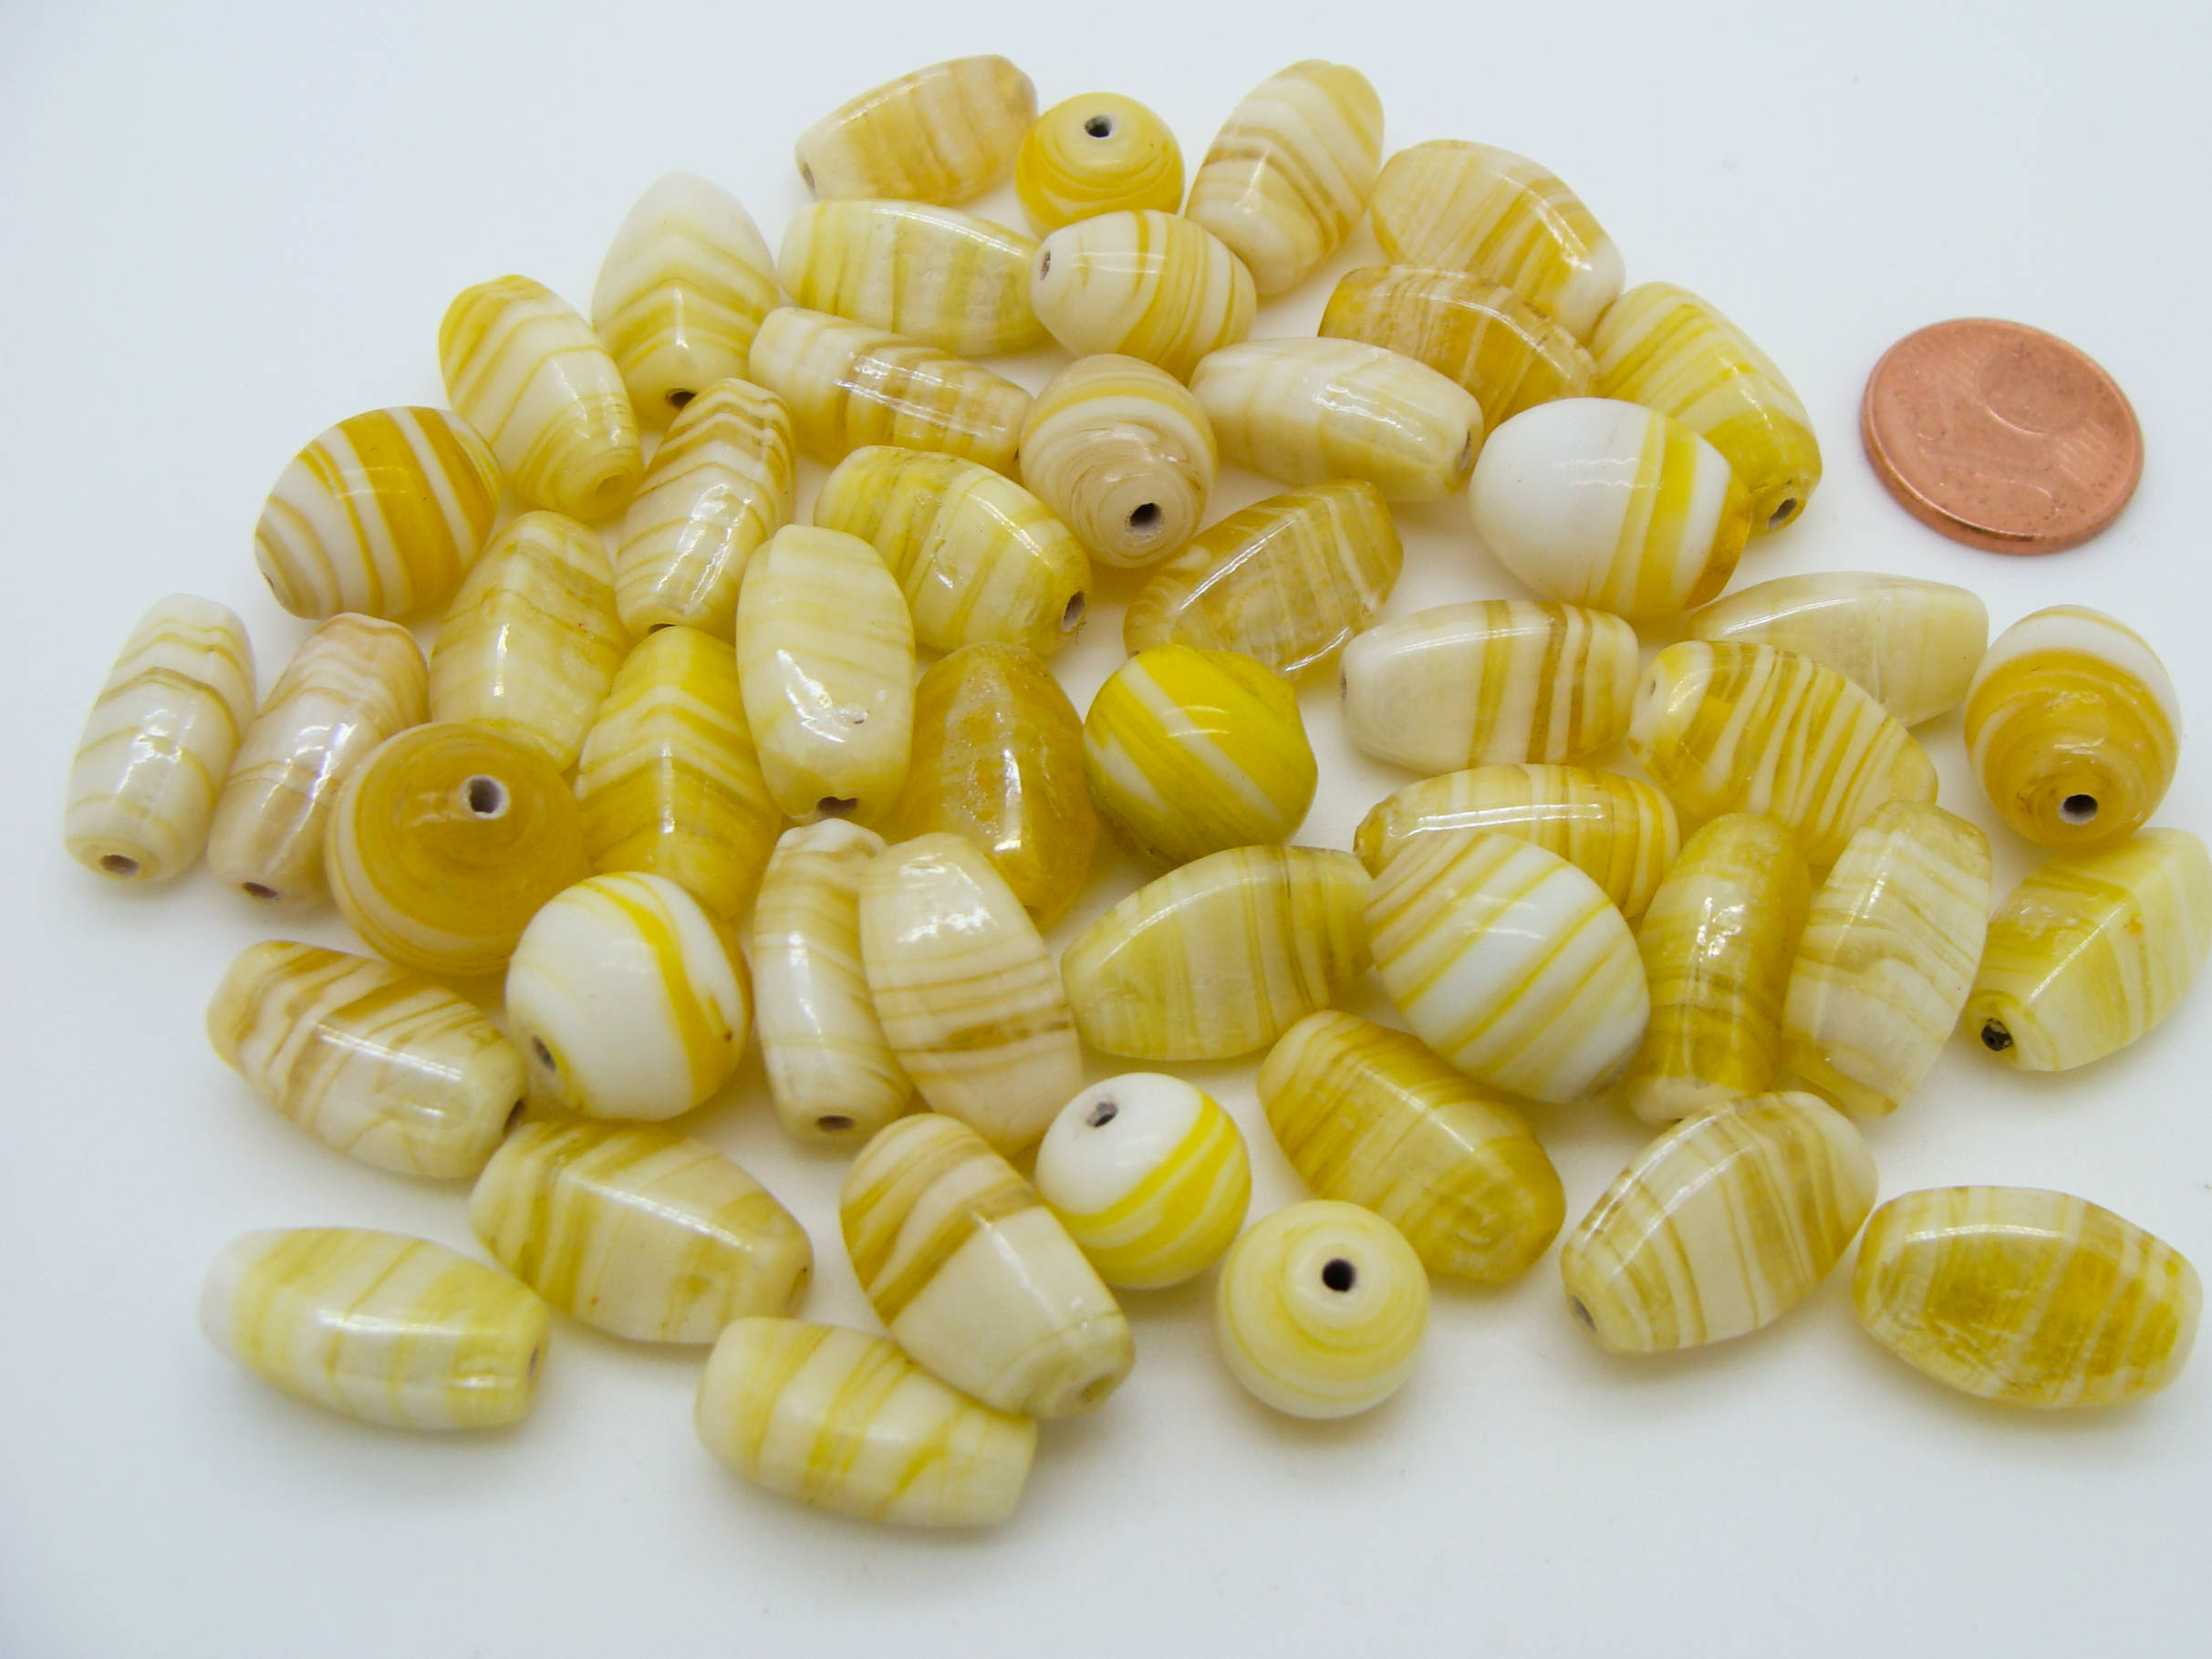 PV-mix05 perle jaune verre 75g